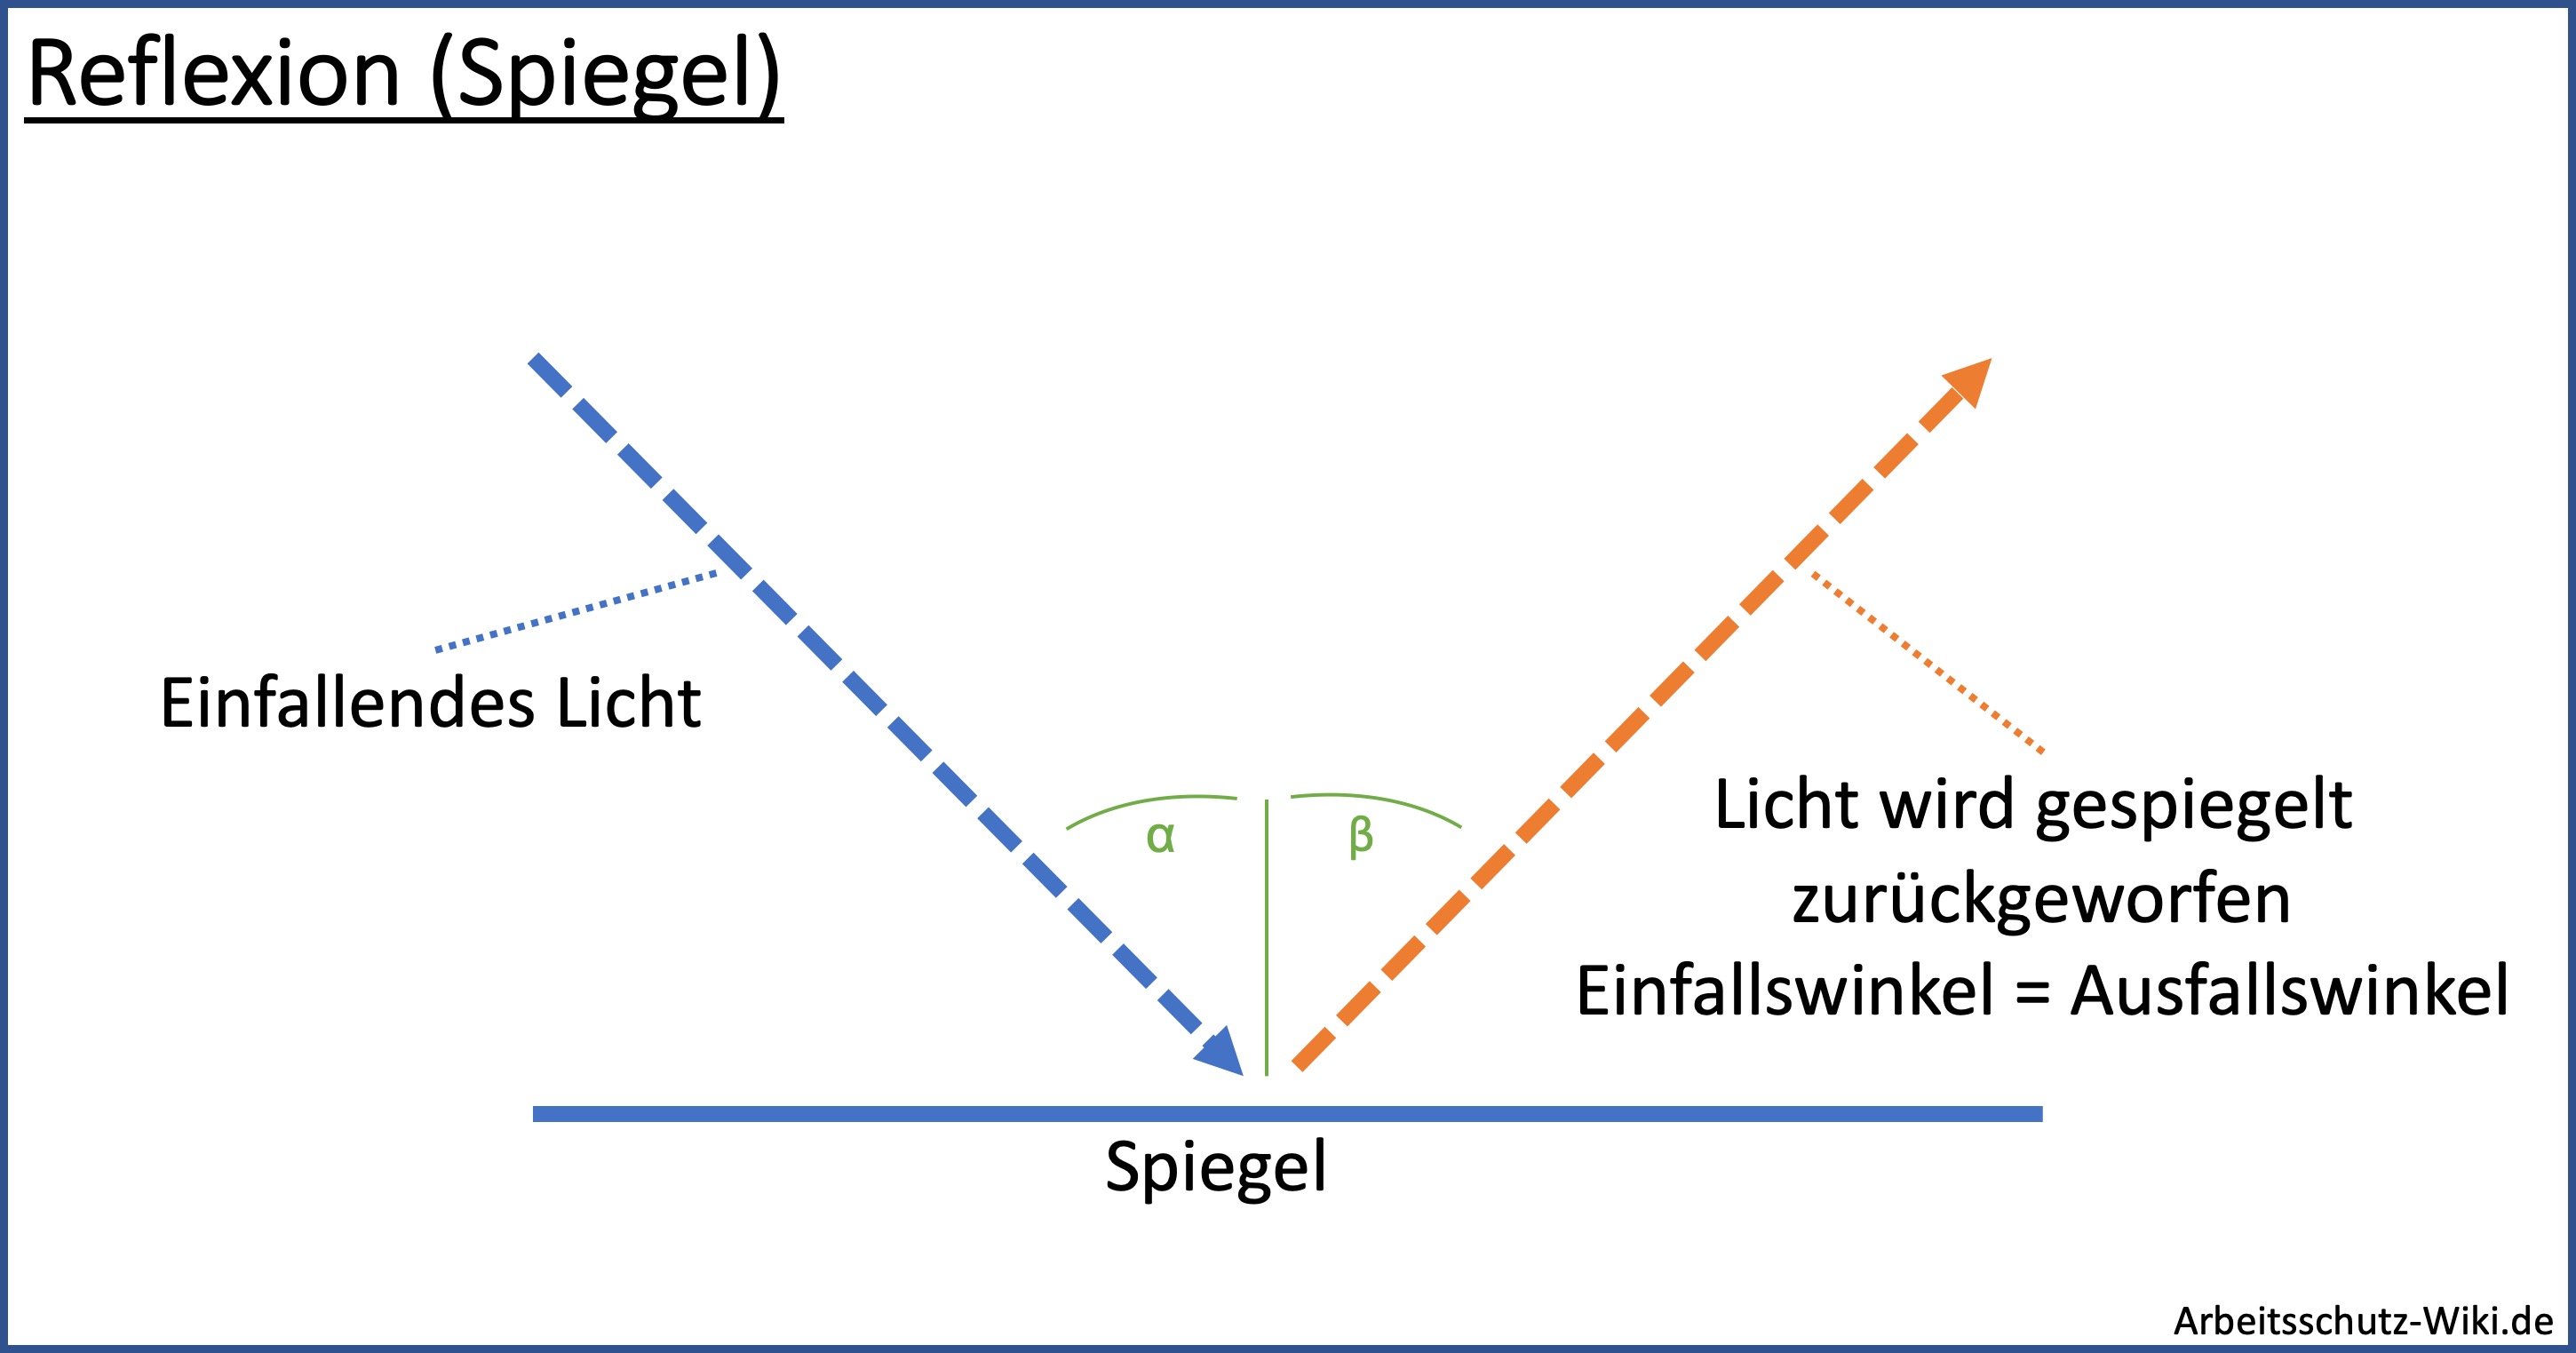 Auf der Grafik ist ein Objekt zu sehen, welches eintreffende Lichtstrahlen spiegelt. Dabei gilt Einfallswinkel gleich Ausfallswinkel.